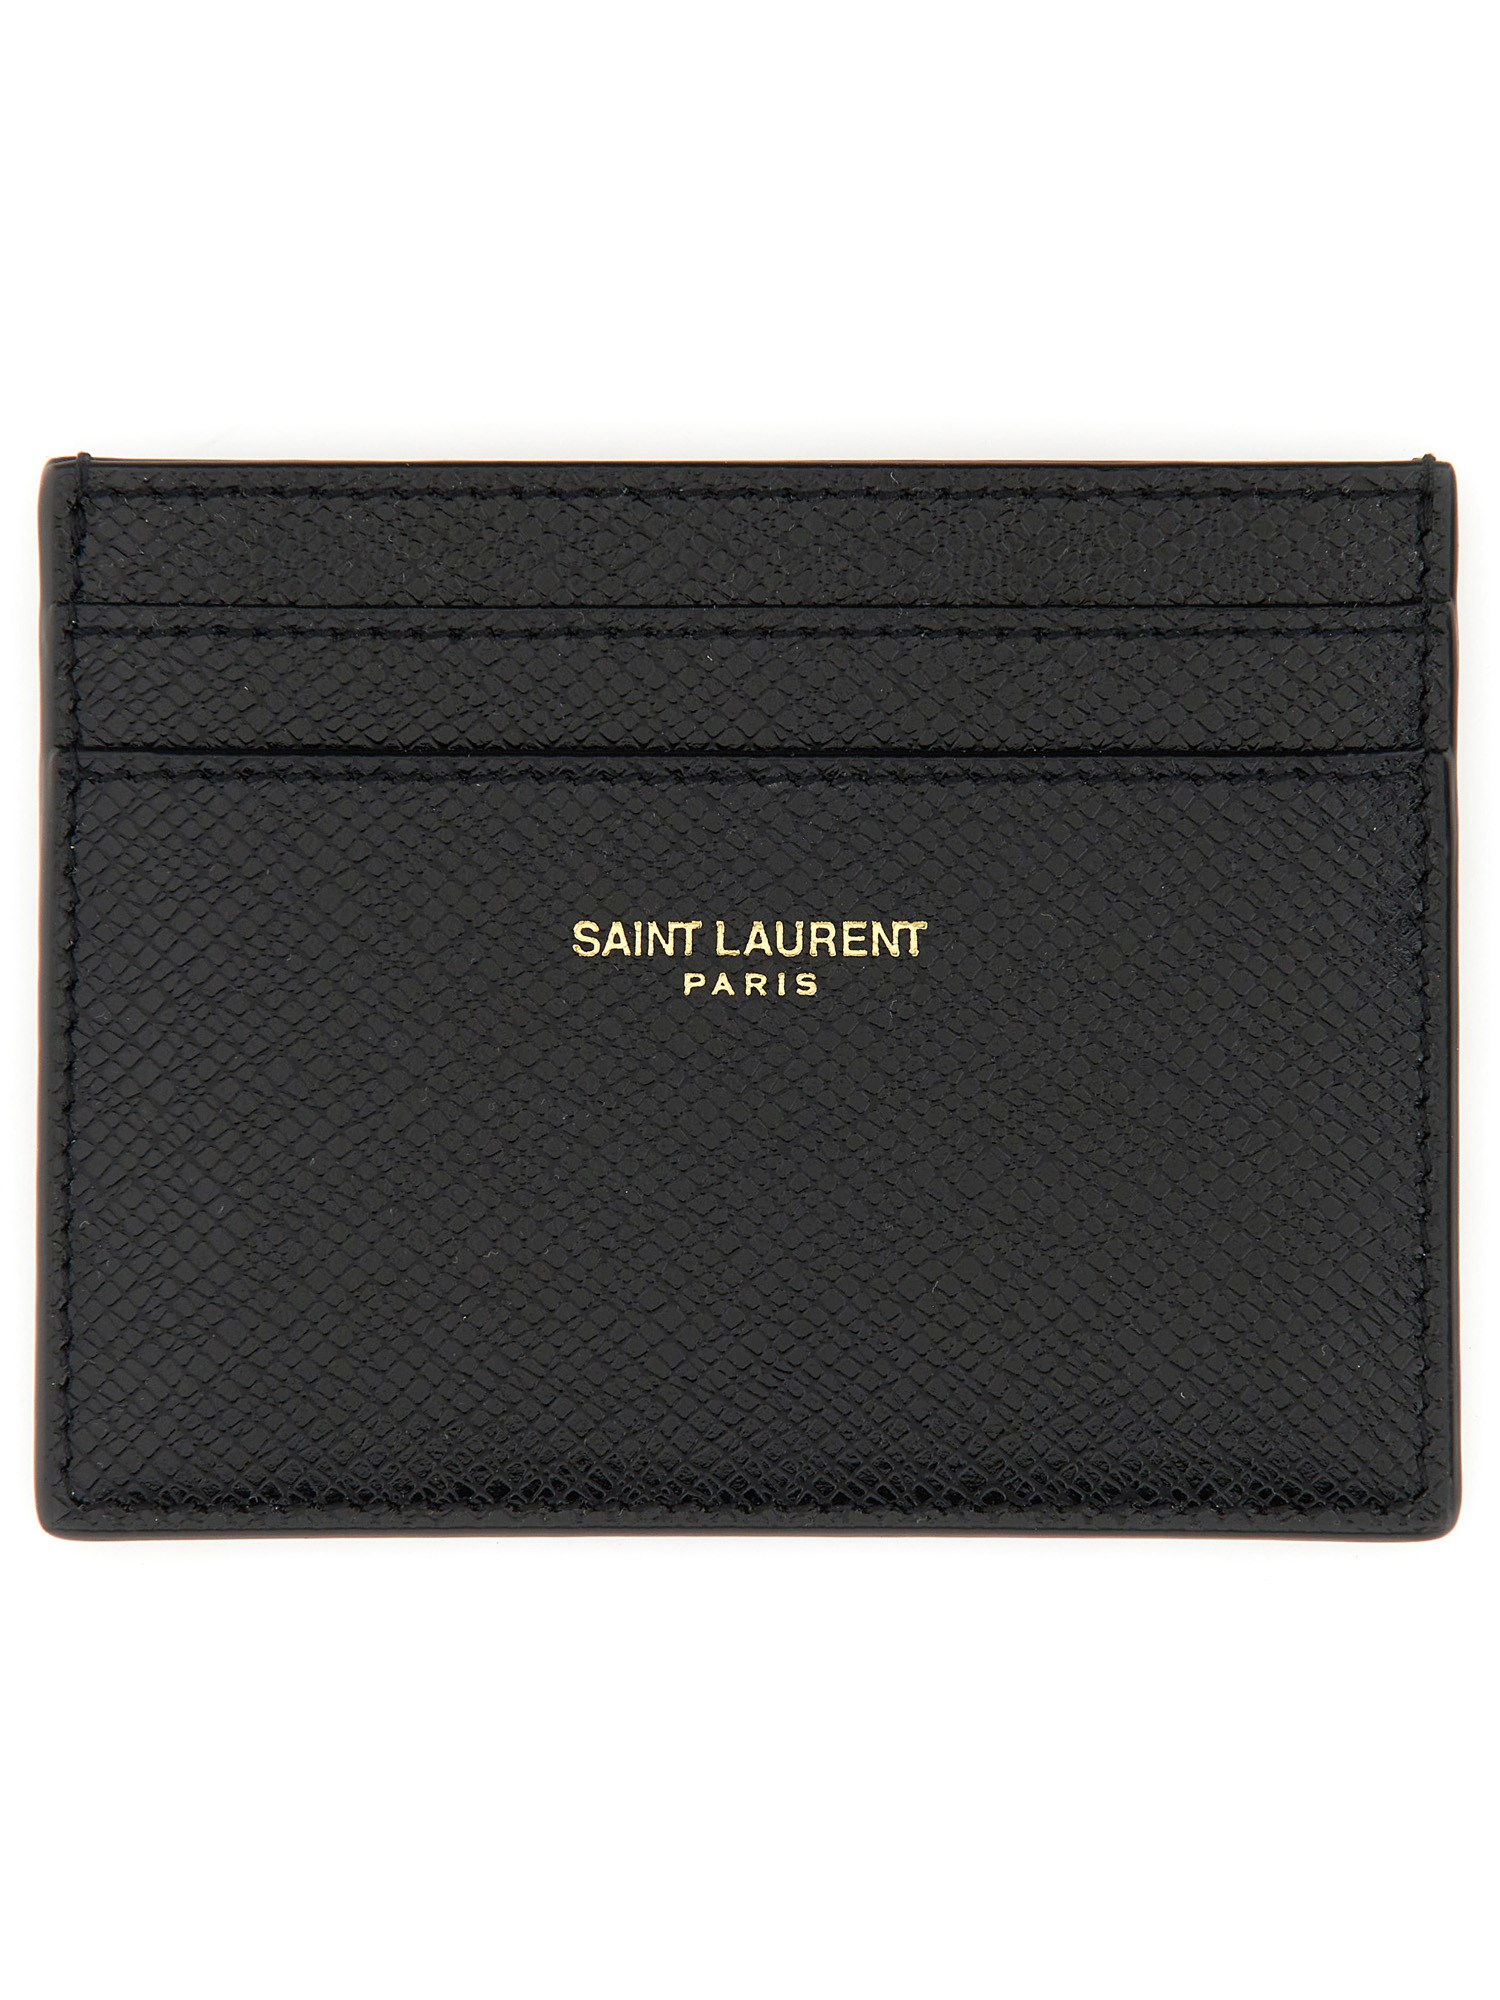 Saint Laurent saint laurent card holder with logo